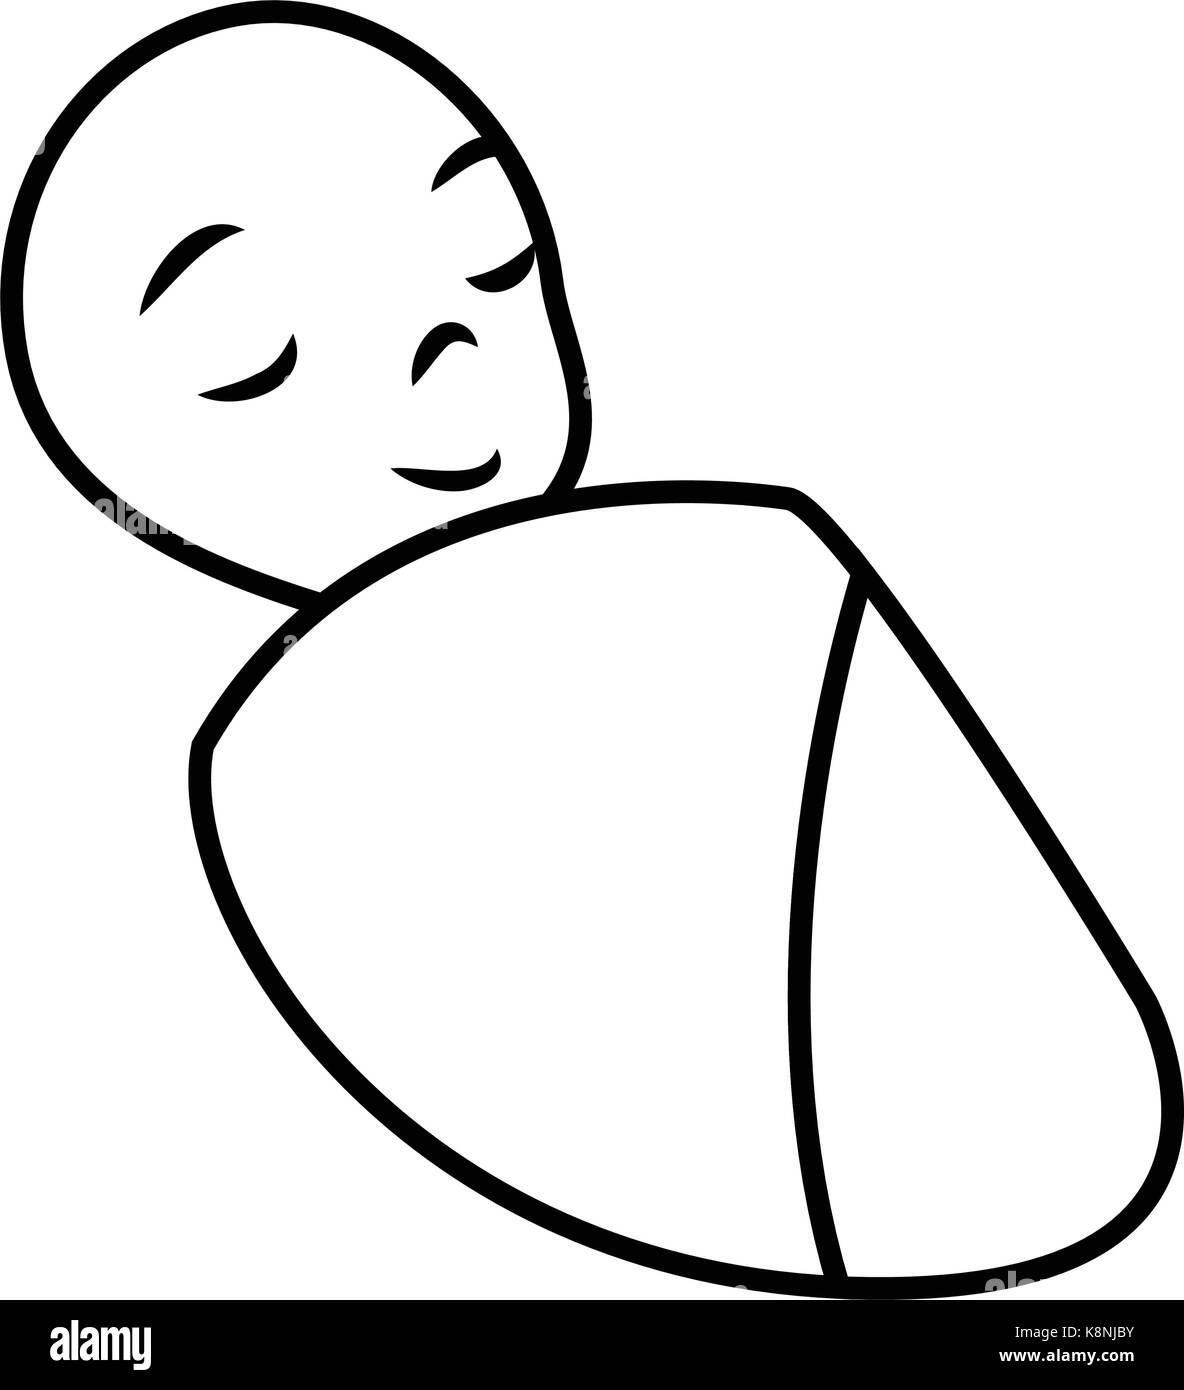 Bébé nouveau-né silhouette vector illustration design isolé sur fond blanc. Illustration de Vecteur